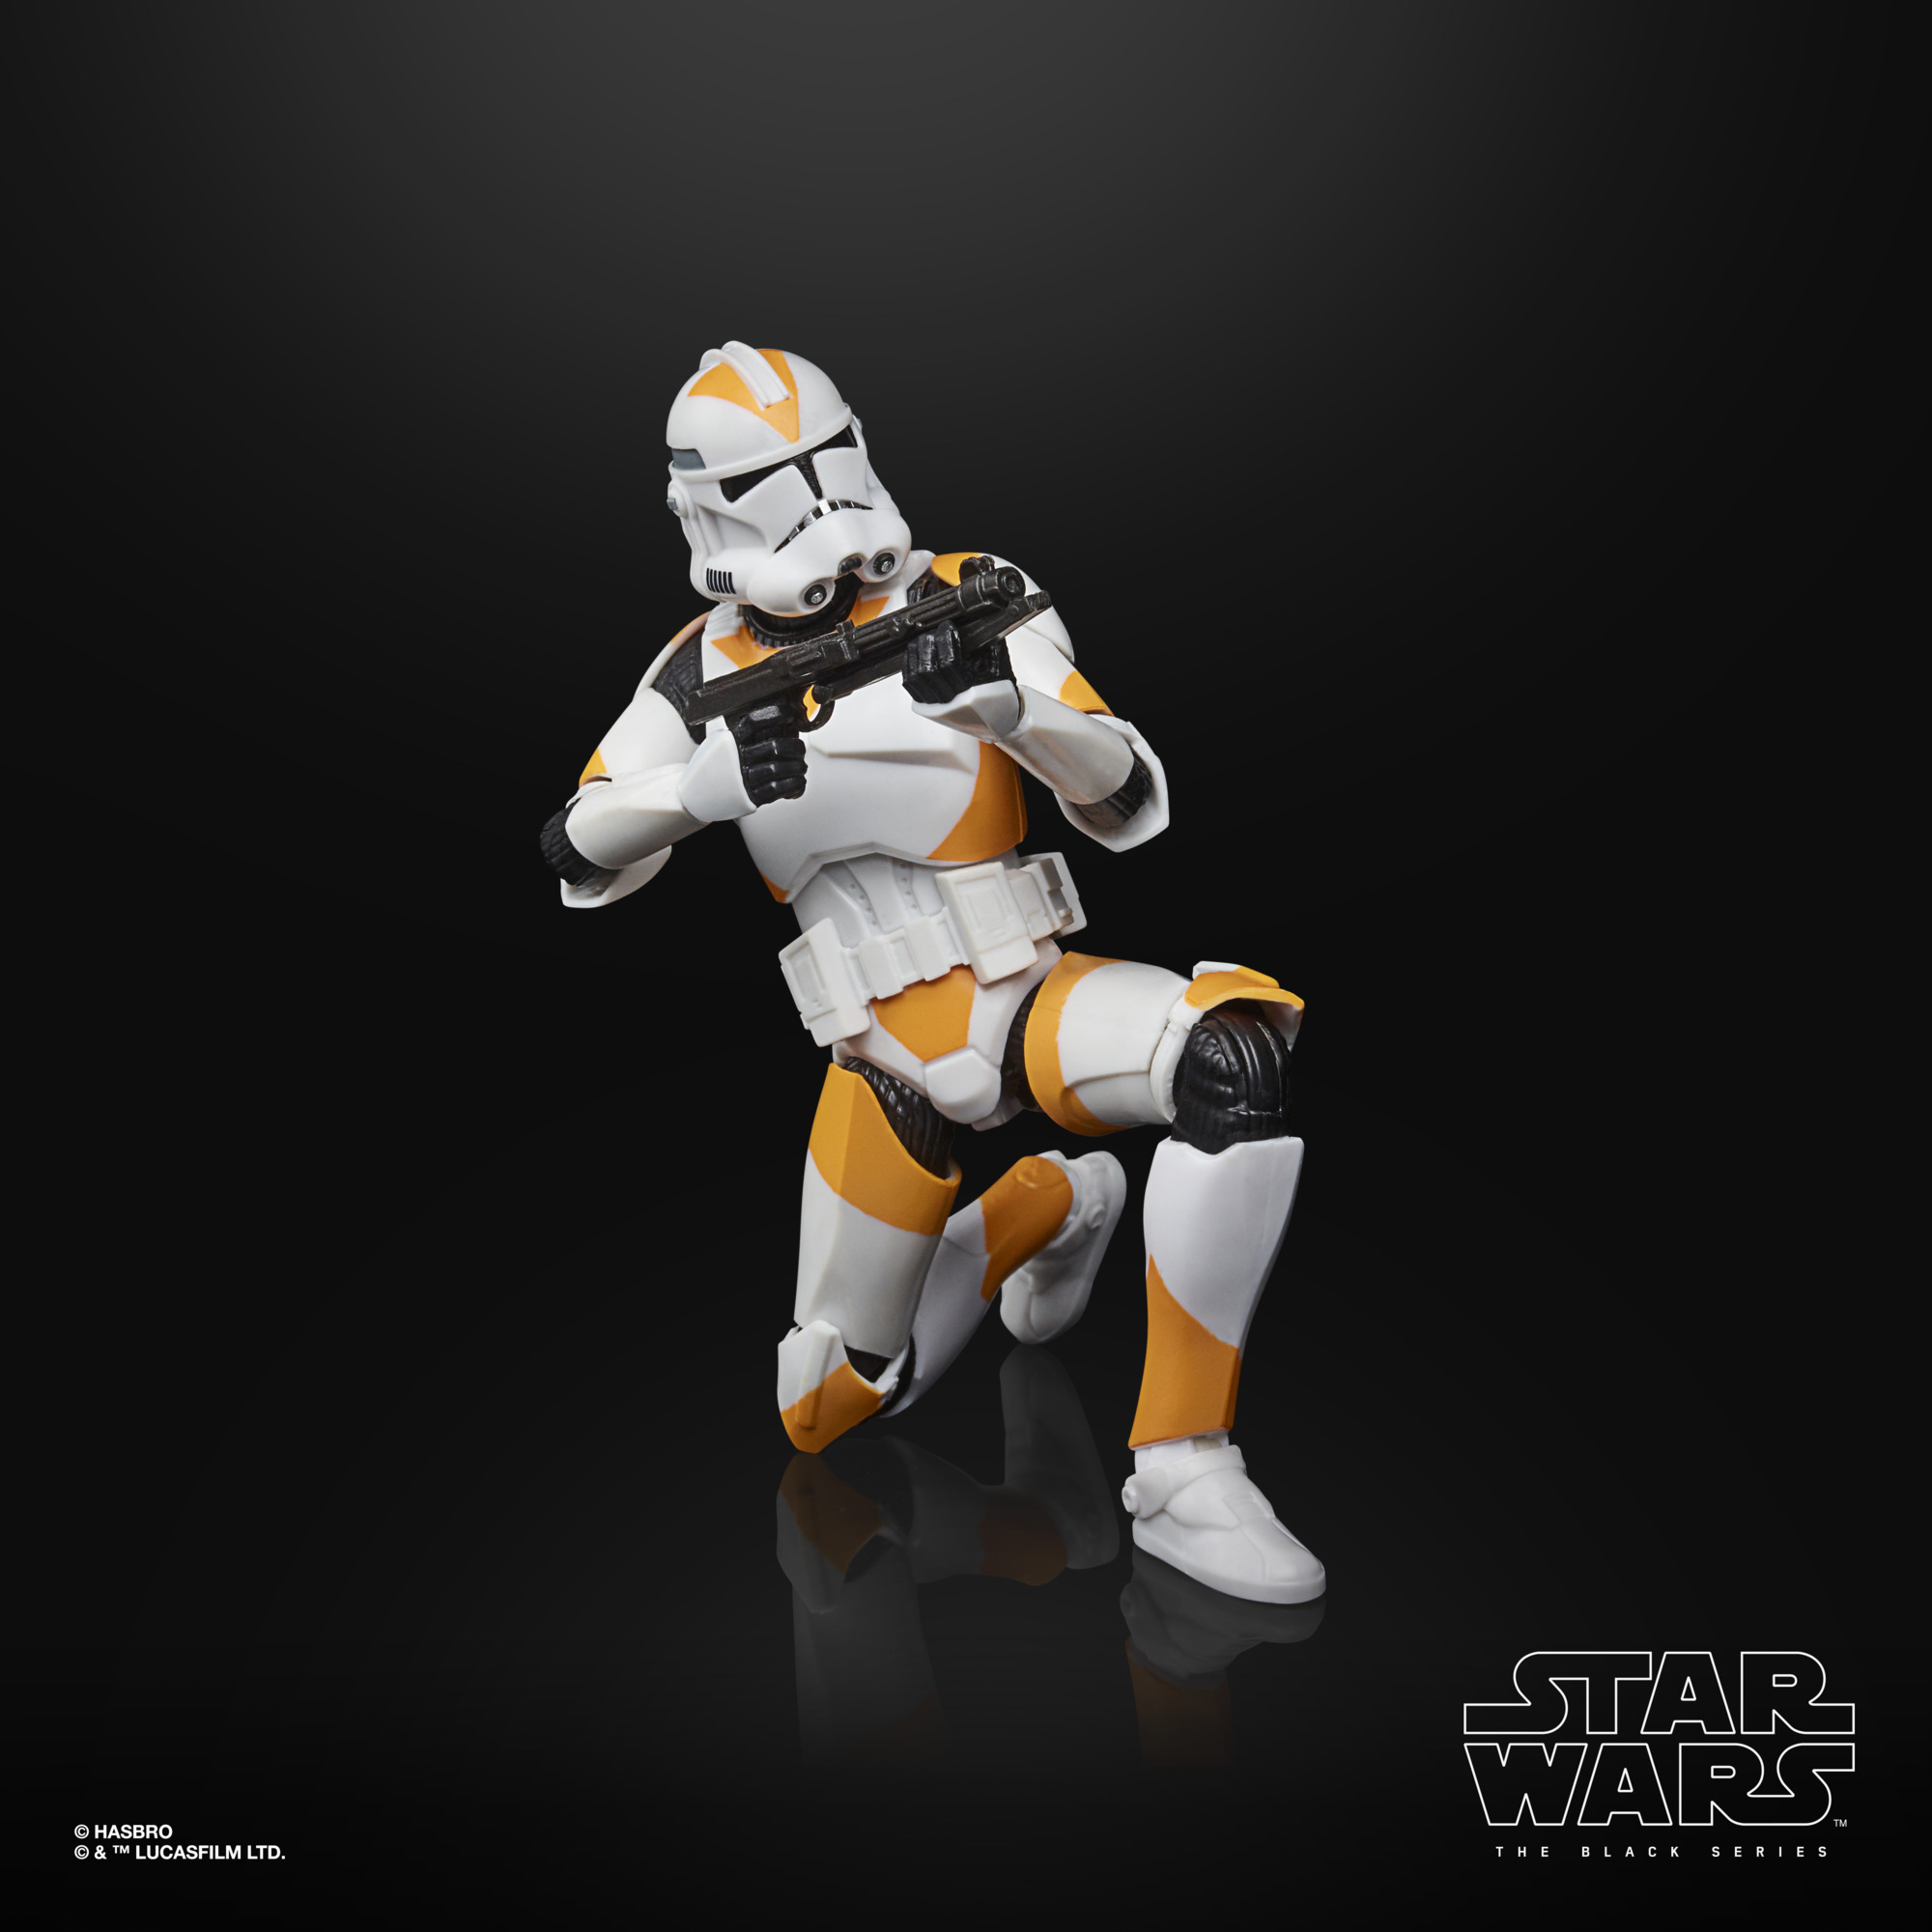 Star Wars The Black Series Clone Trooper (212th Battalion) F28185L0 5010993911844